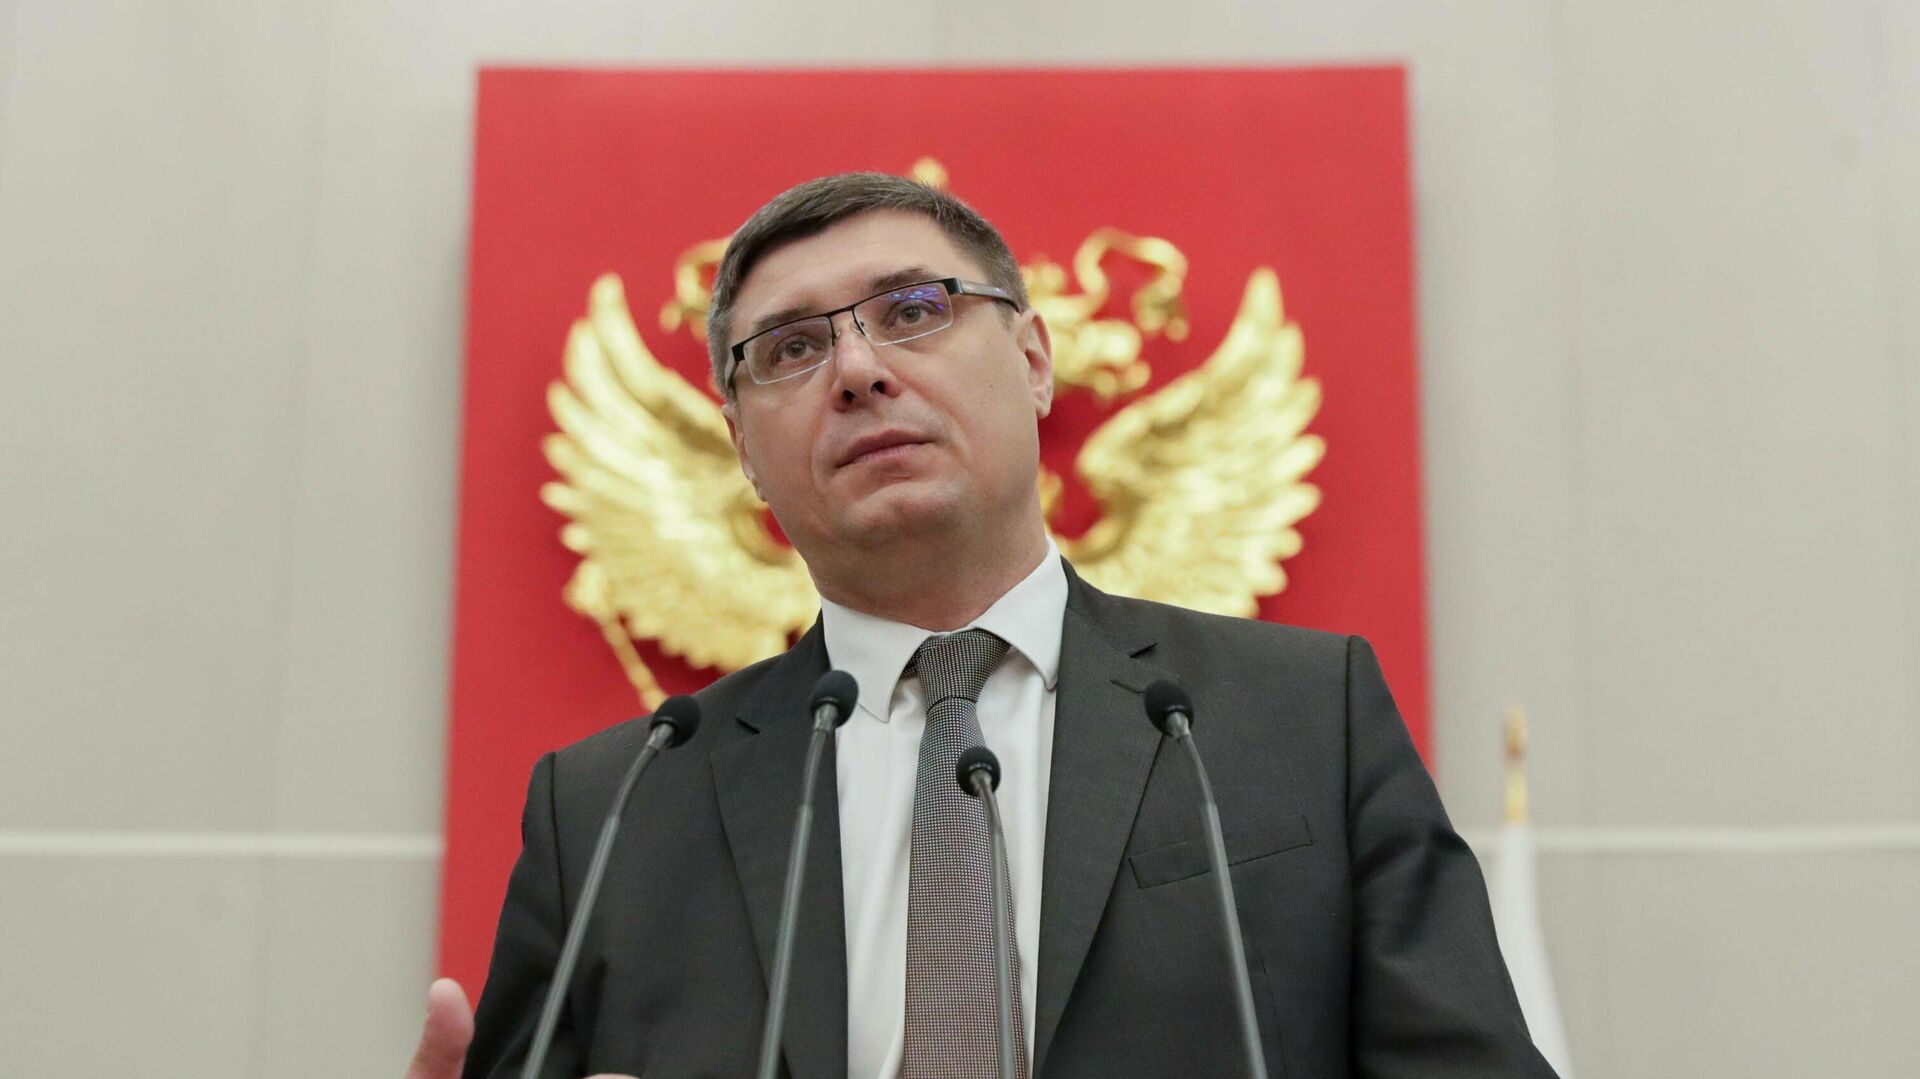 ЕР выдвинула врио владимирского губернатора Авдеева кандидатом на выборы главы региона